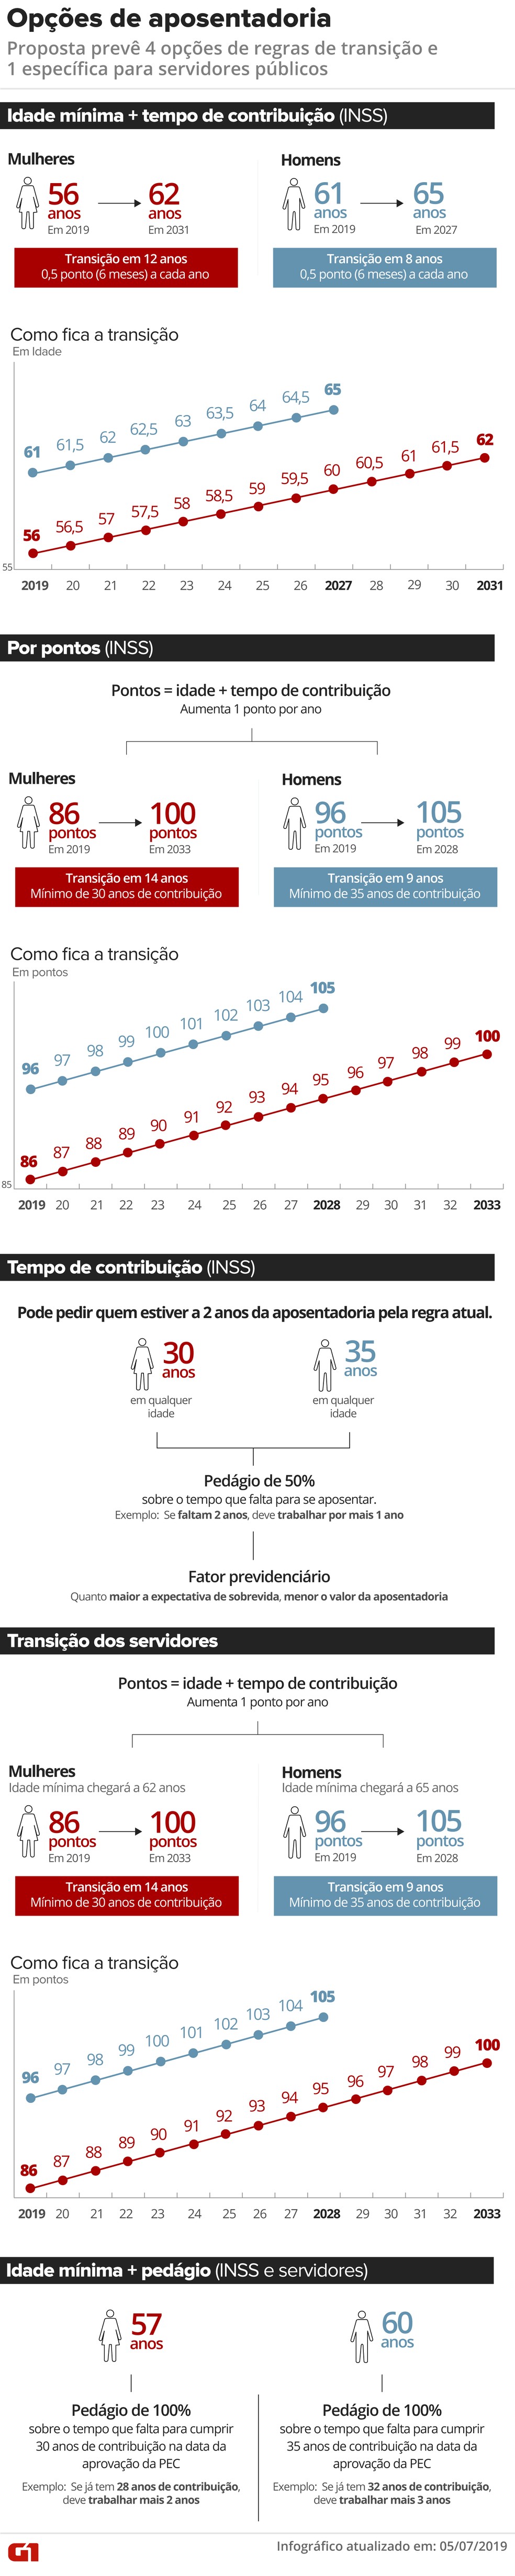 Regras de transição pela proposta de reforma da Previdência  — Foto: Infografia: Rodrigo Sanches/G1